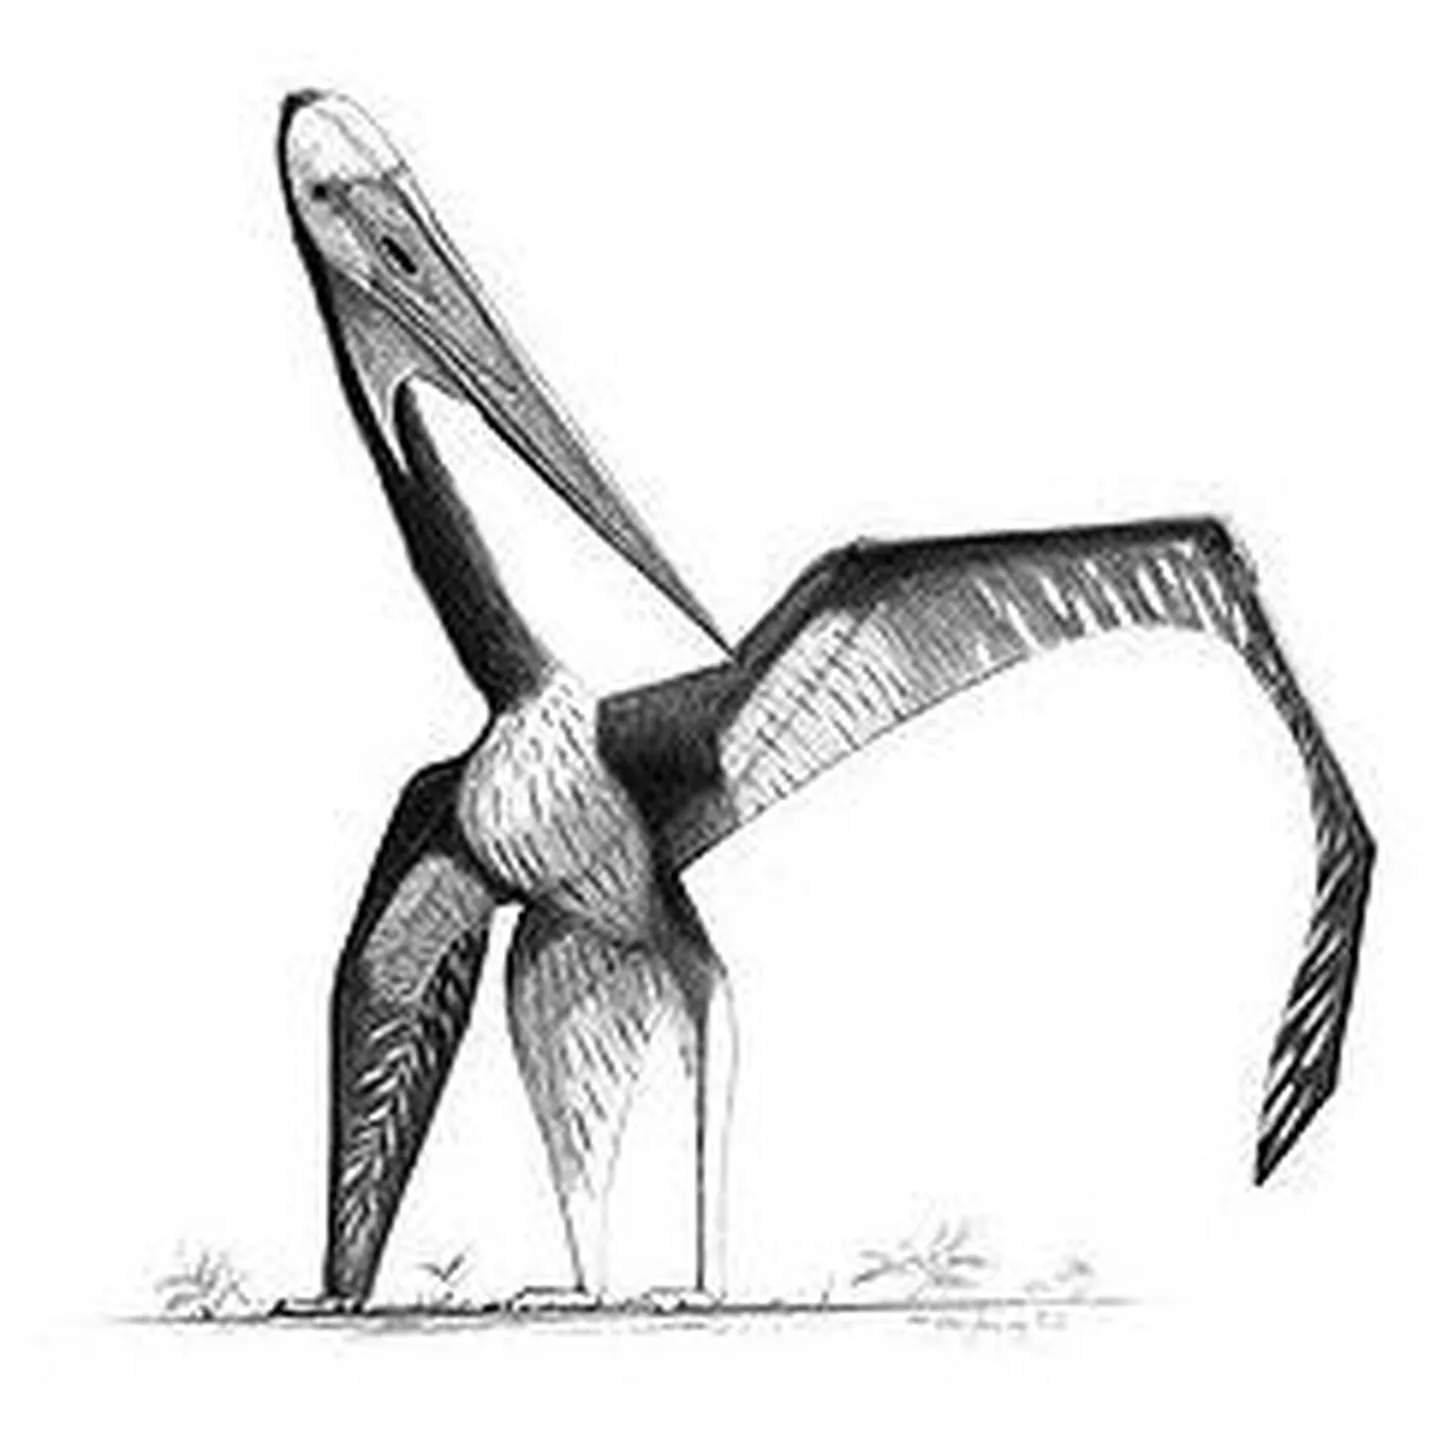 Hiinast leitud fossiilide põhjal joonistatud pterosaurus. Umbes samasugune võis välja näha 115 miljonit aasta tagasi Brasiilias elanud pterosaurus Lacusovagus